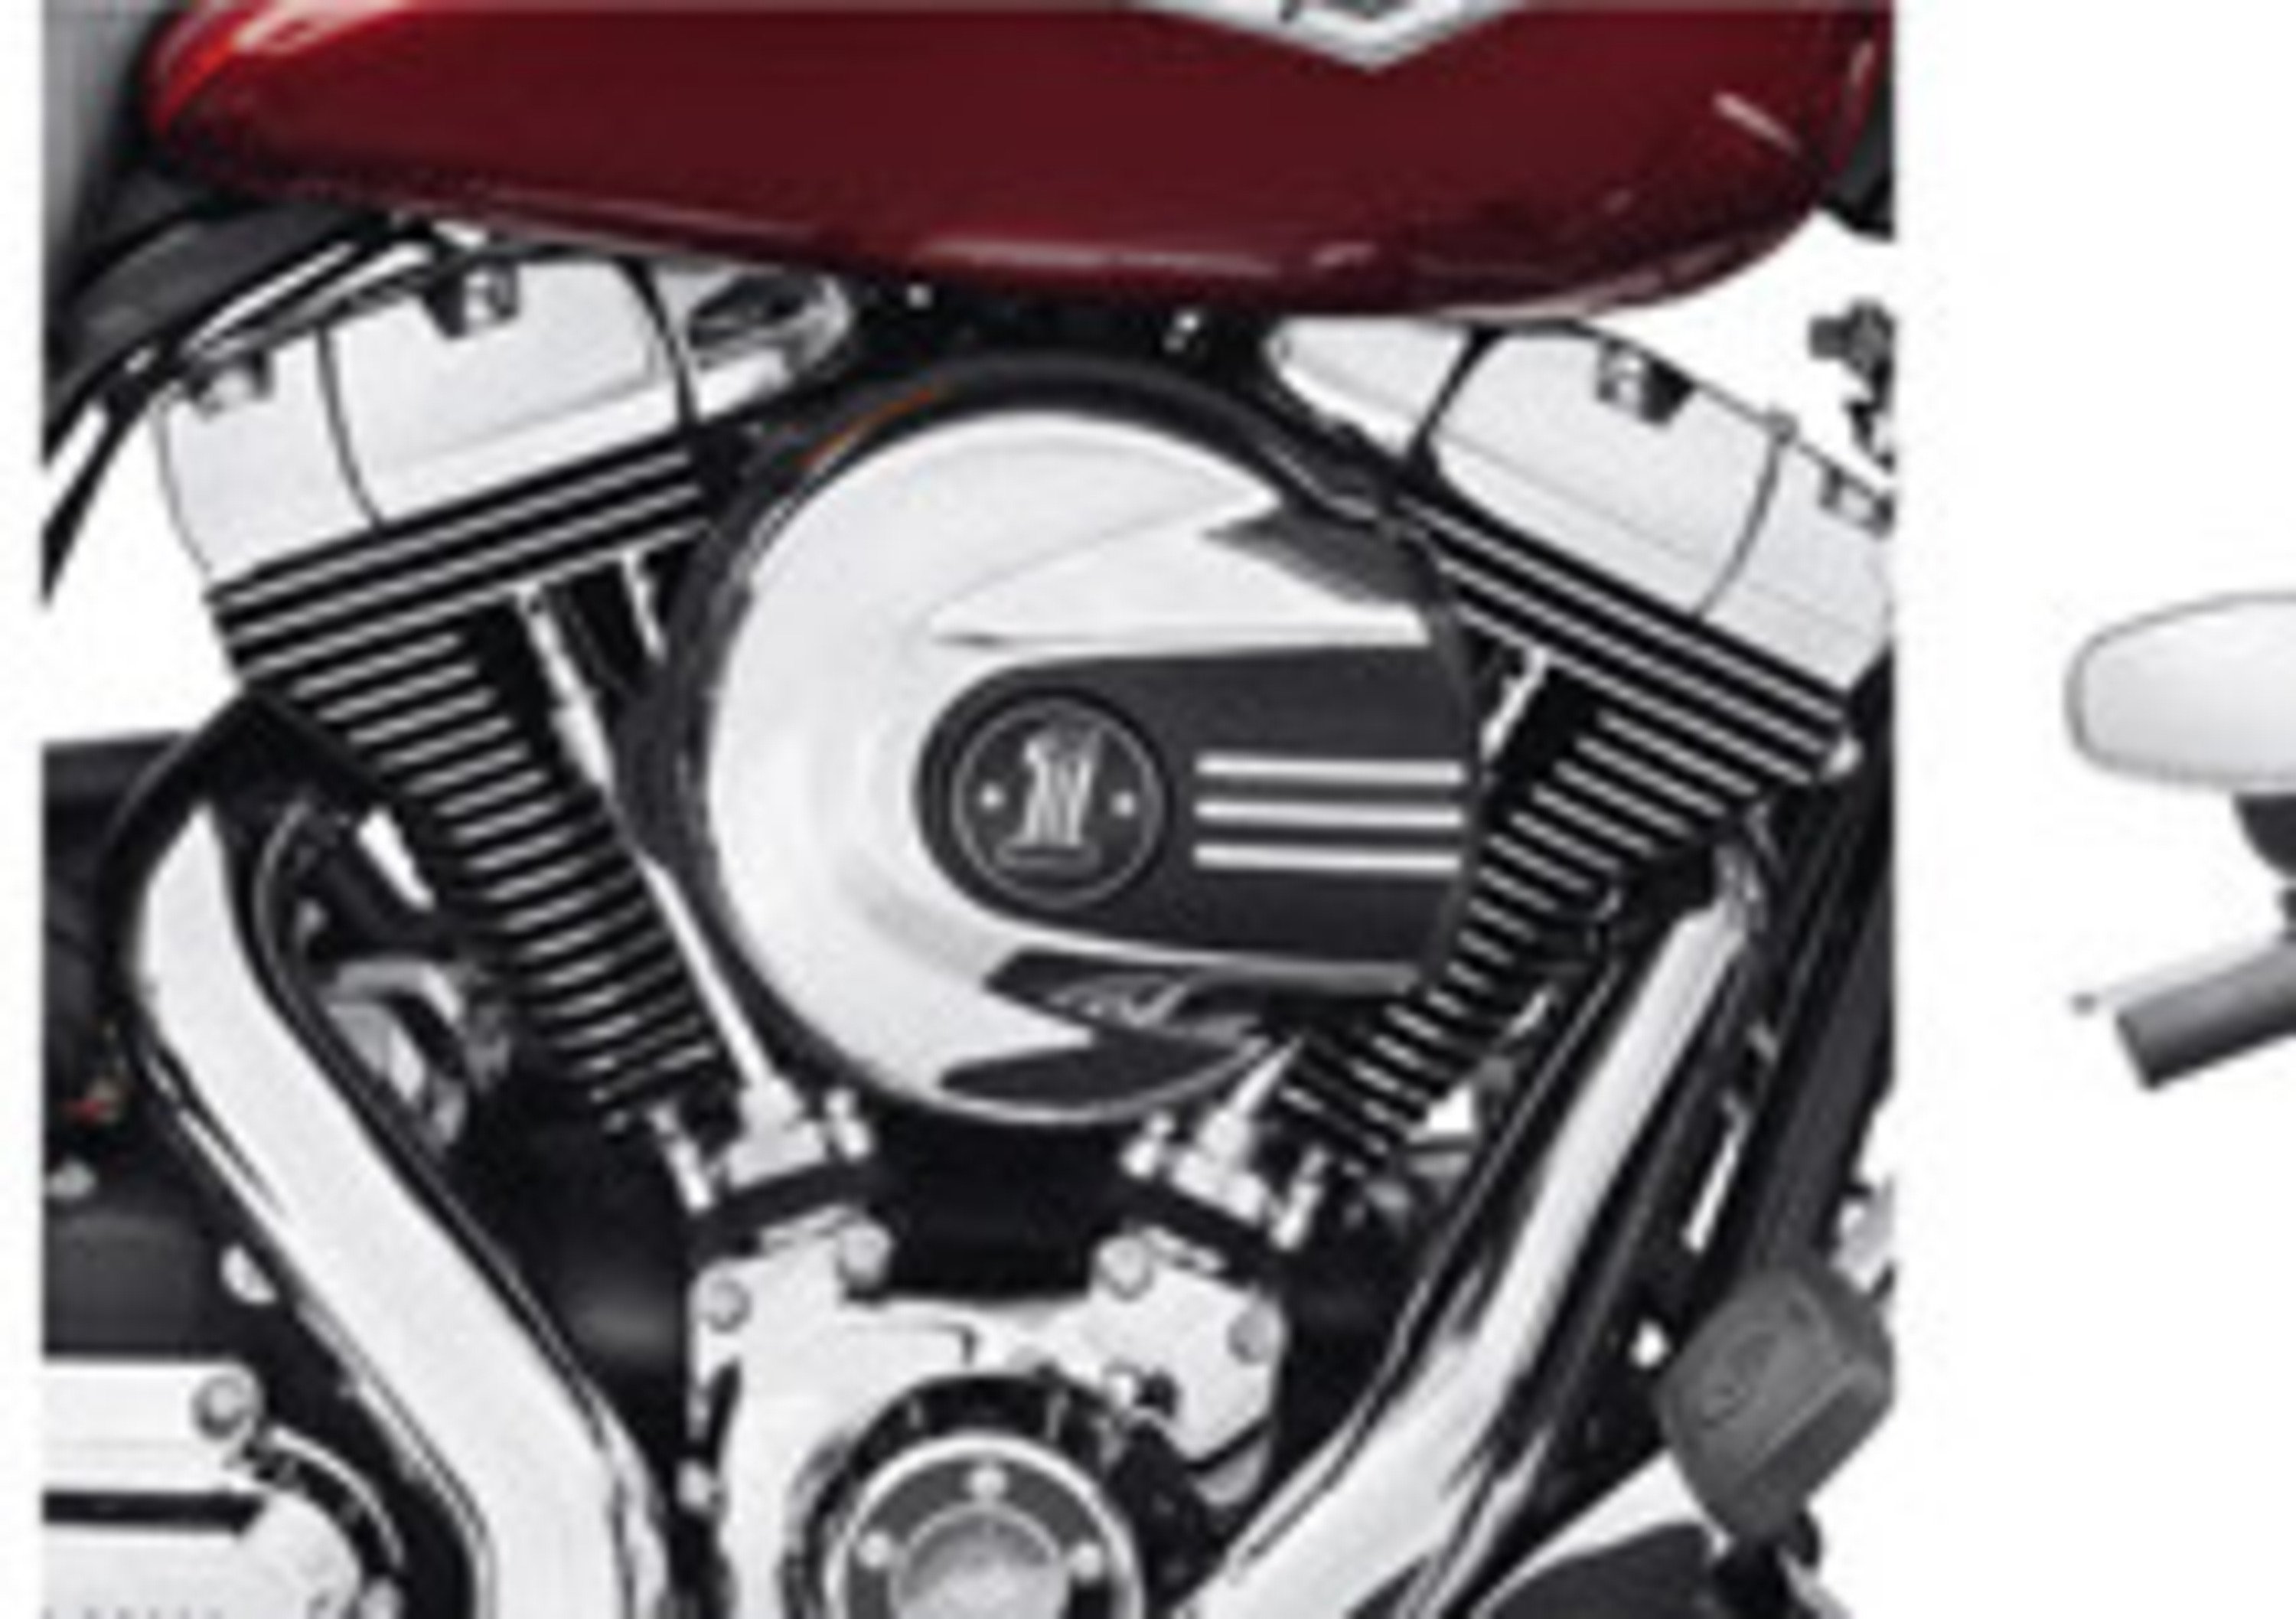 Nuovi accessori Harley-Davidson in tema Project Rushmore